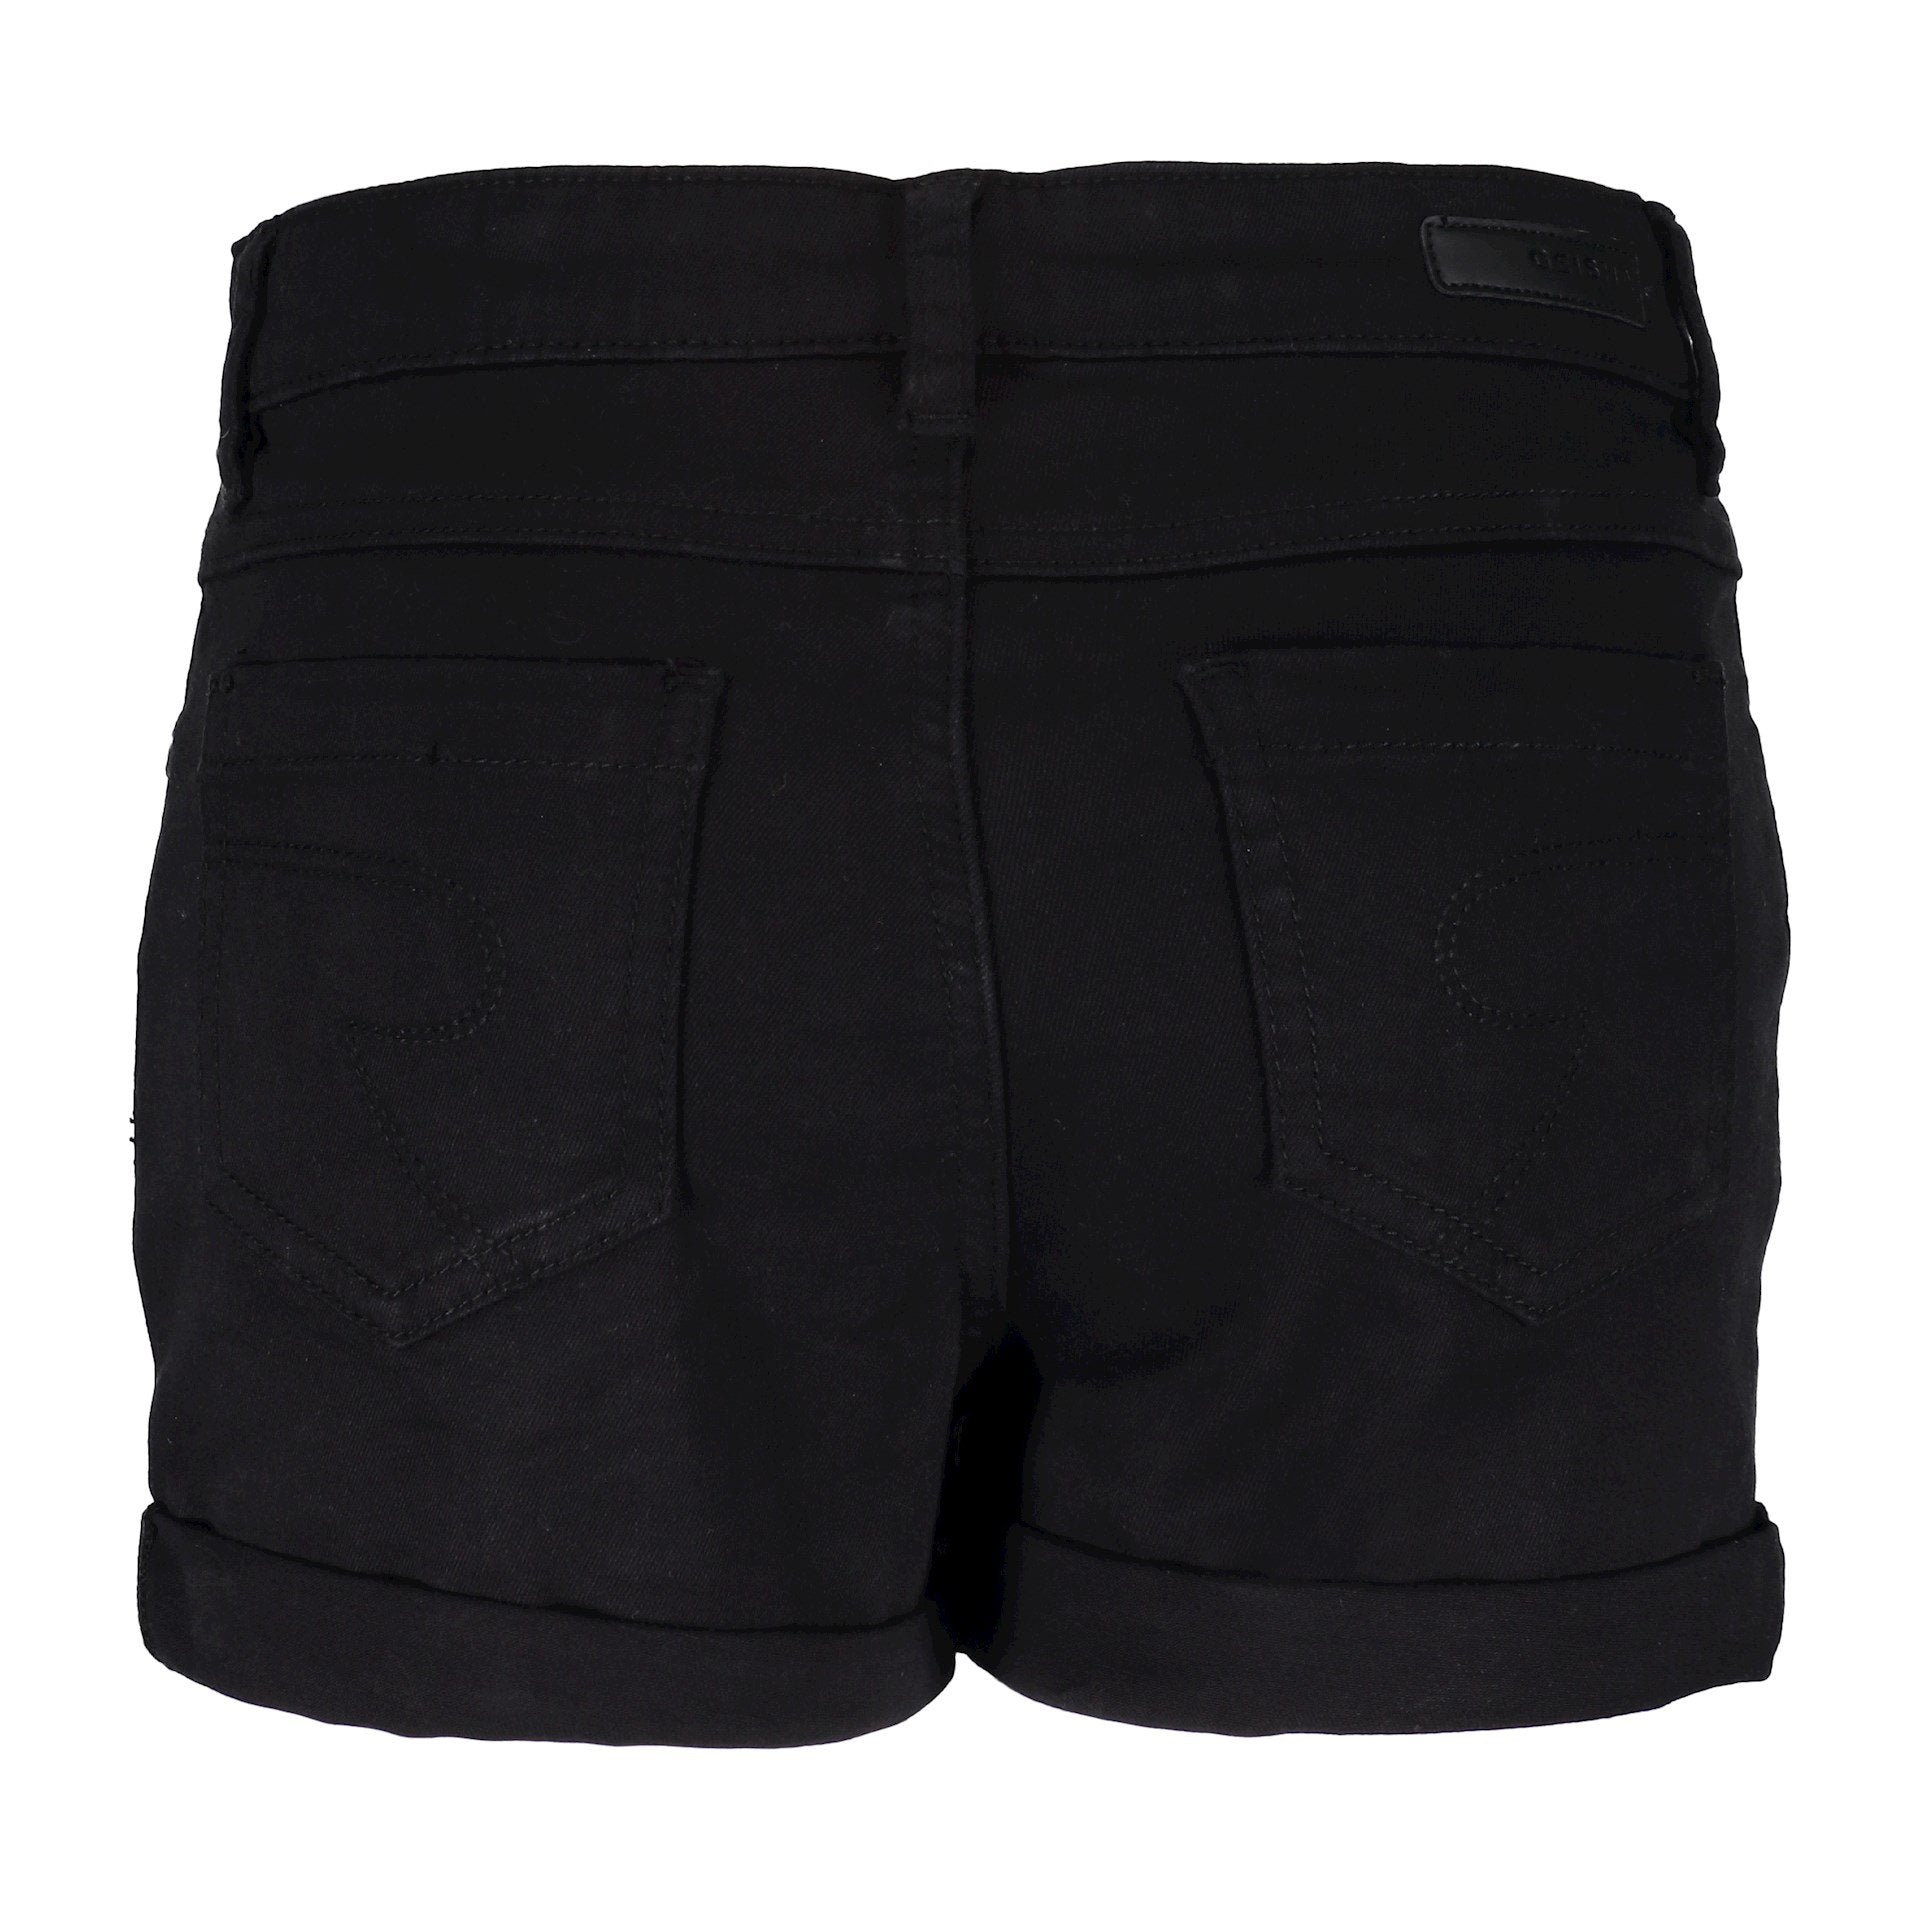 Meisjes Shorts 5 pocket van Geisha in de kleur Black in maat 176.